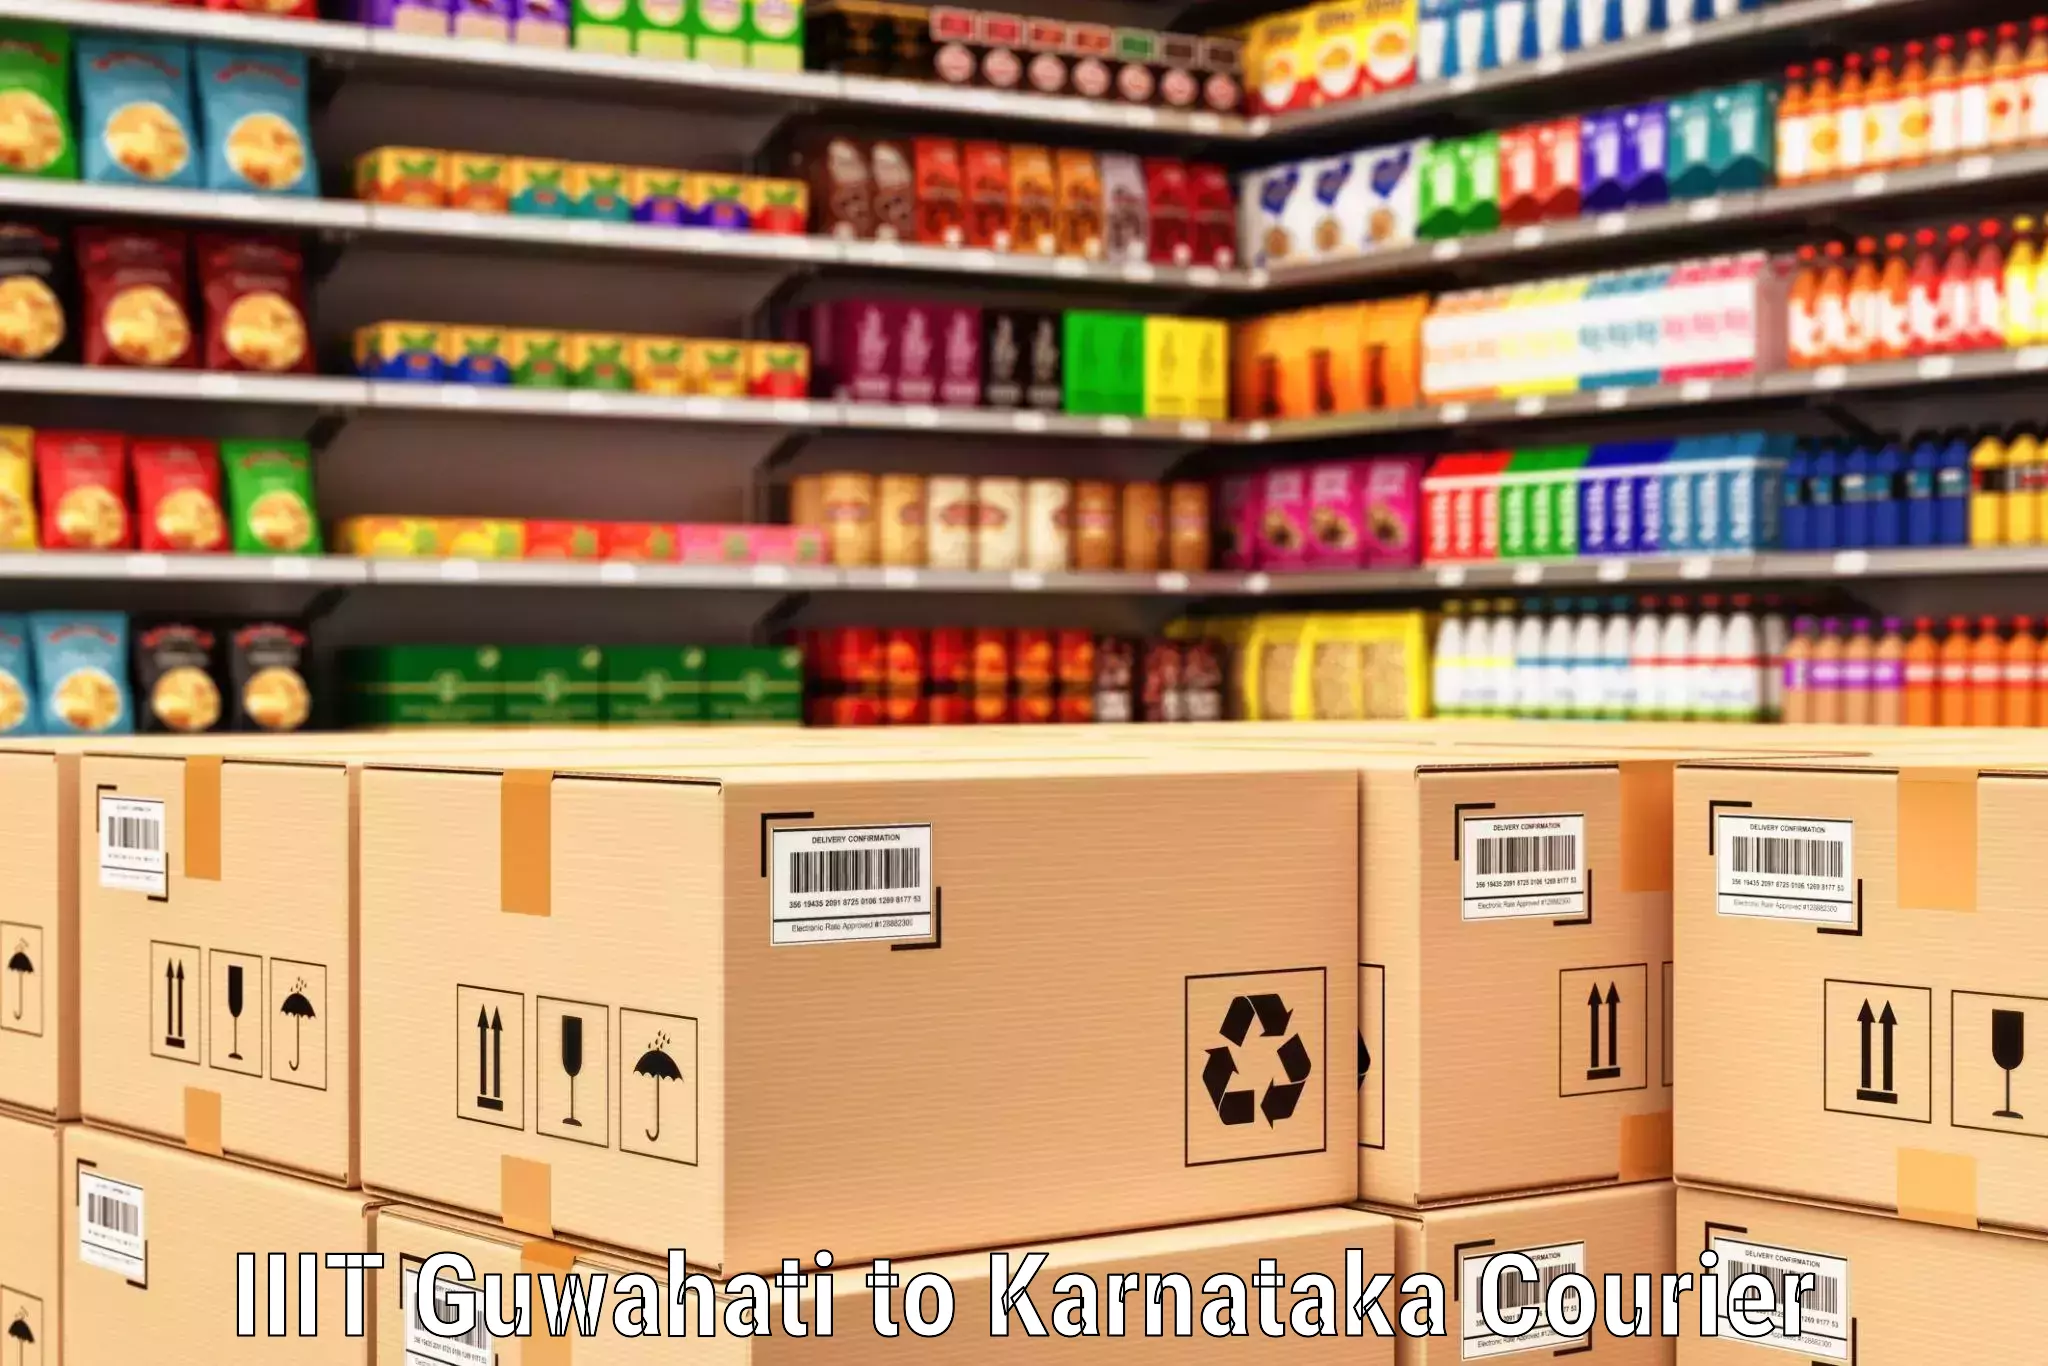 Express courier facilities IIIT Guwahati to Karnataka